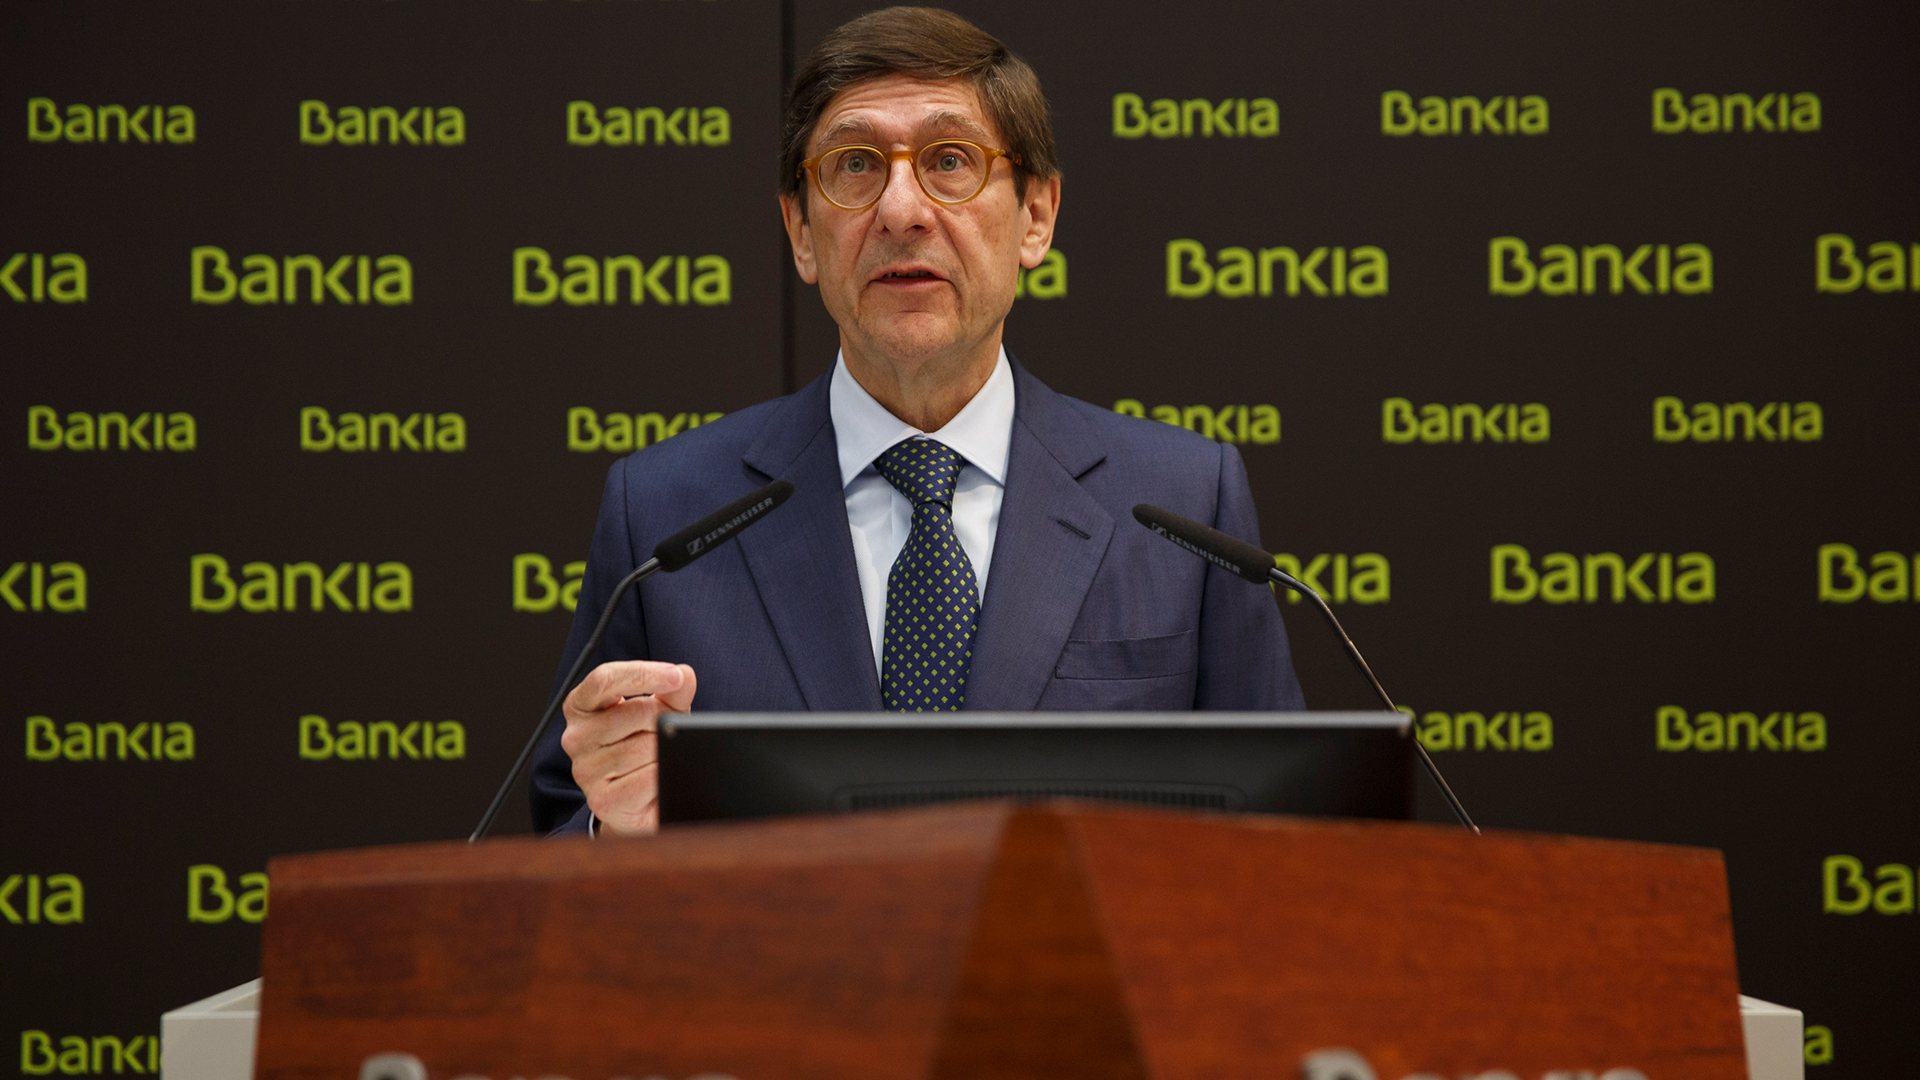 Bankia absorberá Banco Mare Nostrum por 825 millones de euros